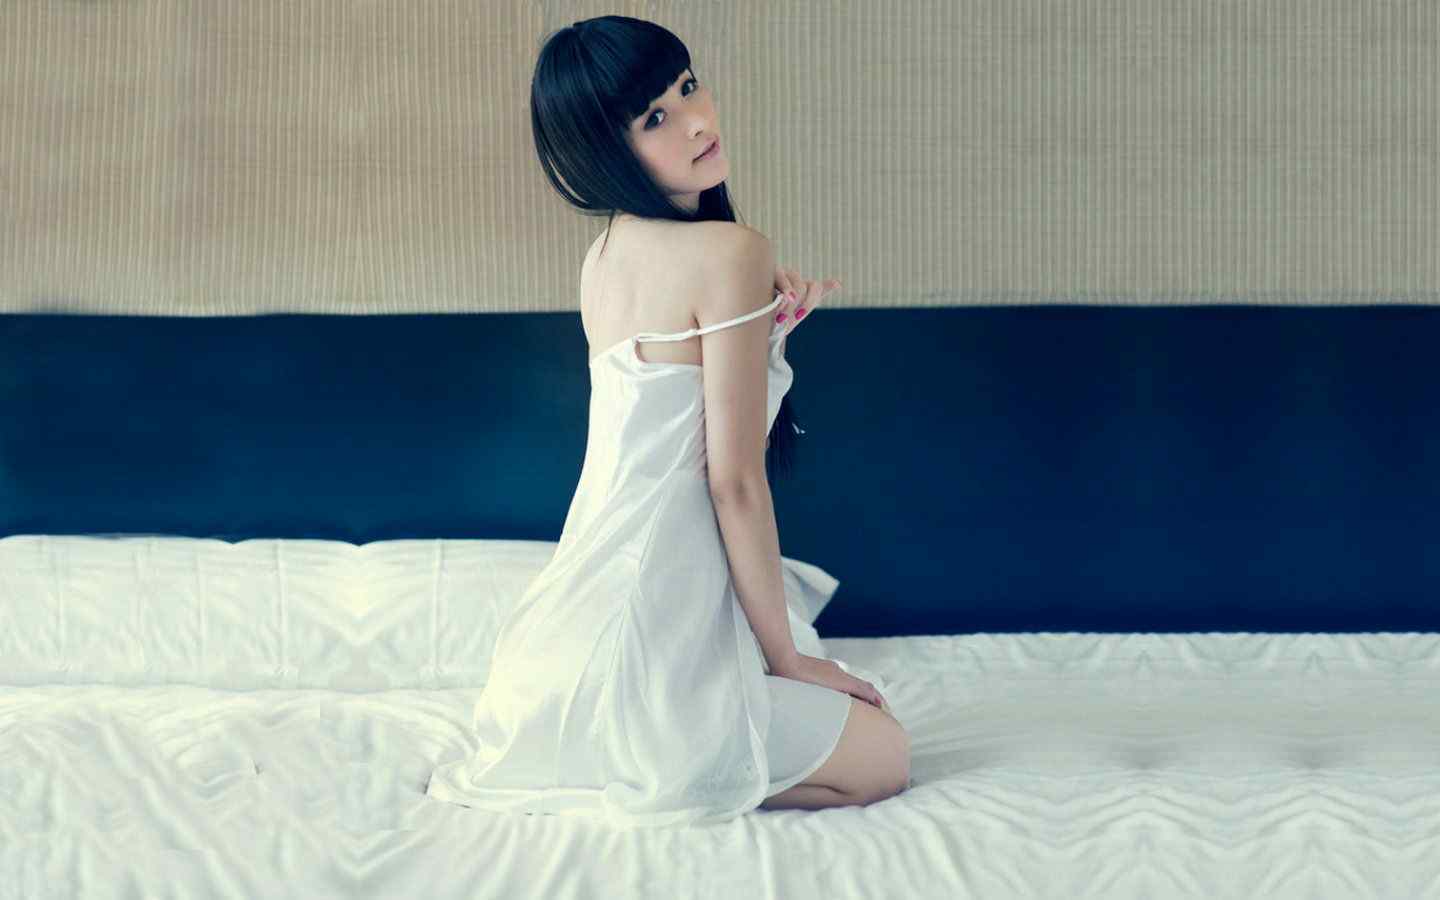 超级美女桌面壁纸之超模何静白色睡衣